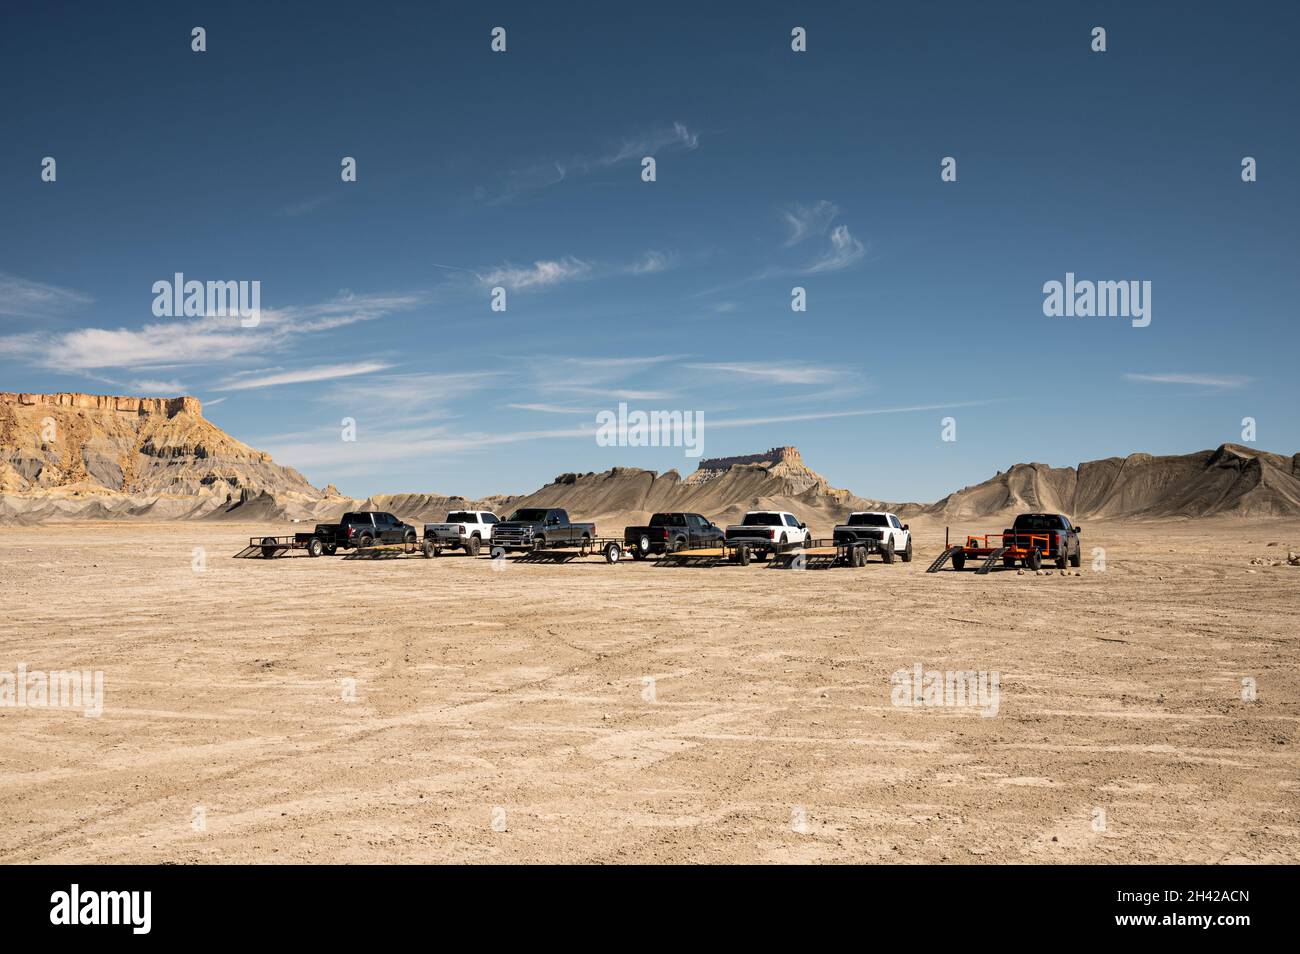 Coches con remolques estacionados en Swing Arm City, Utah, un paraíso para la conducción todoterreno Foto de stock